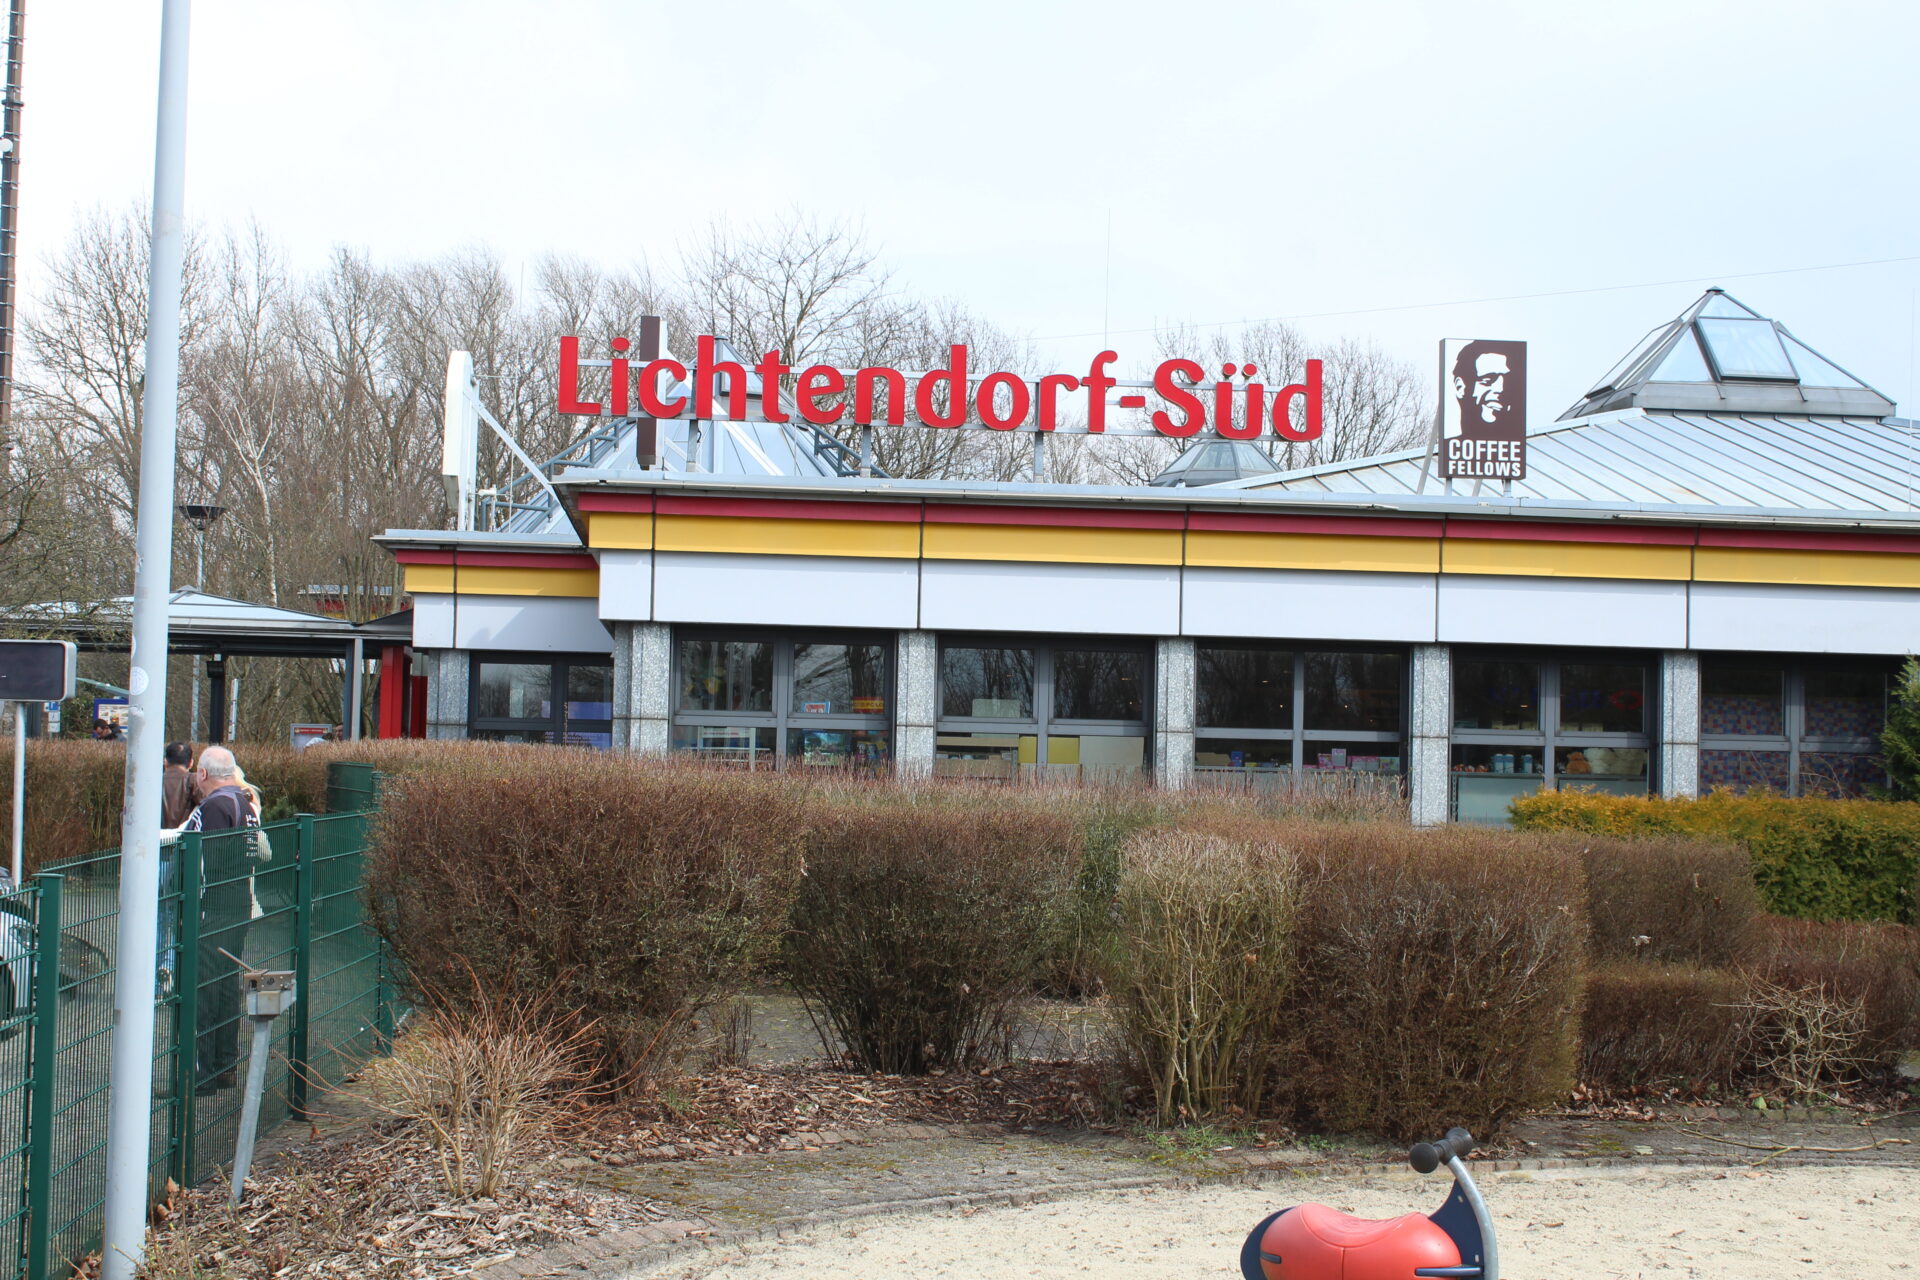 Erweiterung der Rastanlage: Stadt begleitet Pläne für Lichtendorf-Süd kritisch